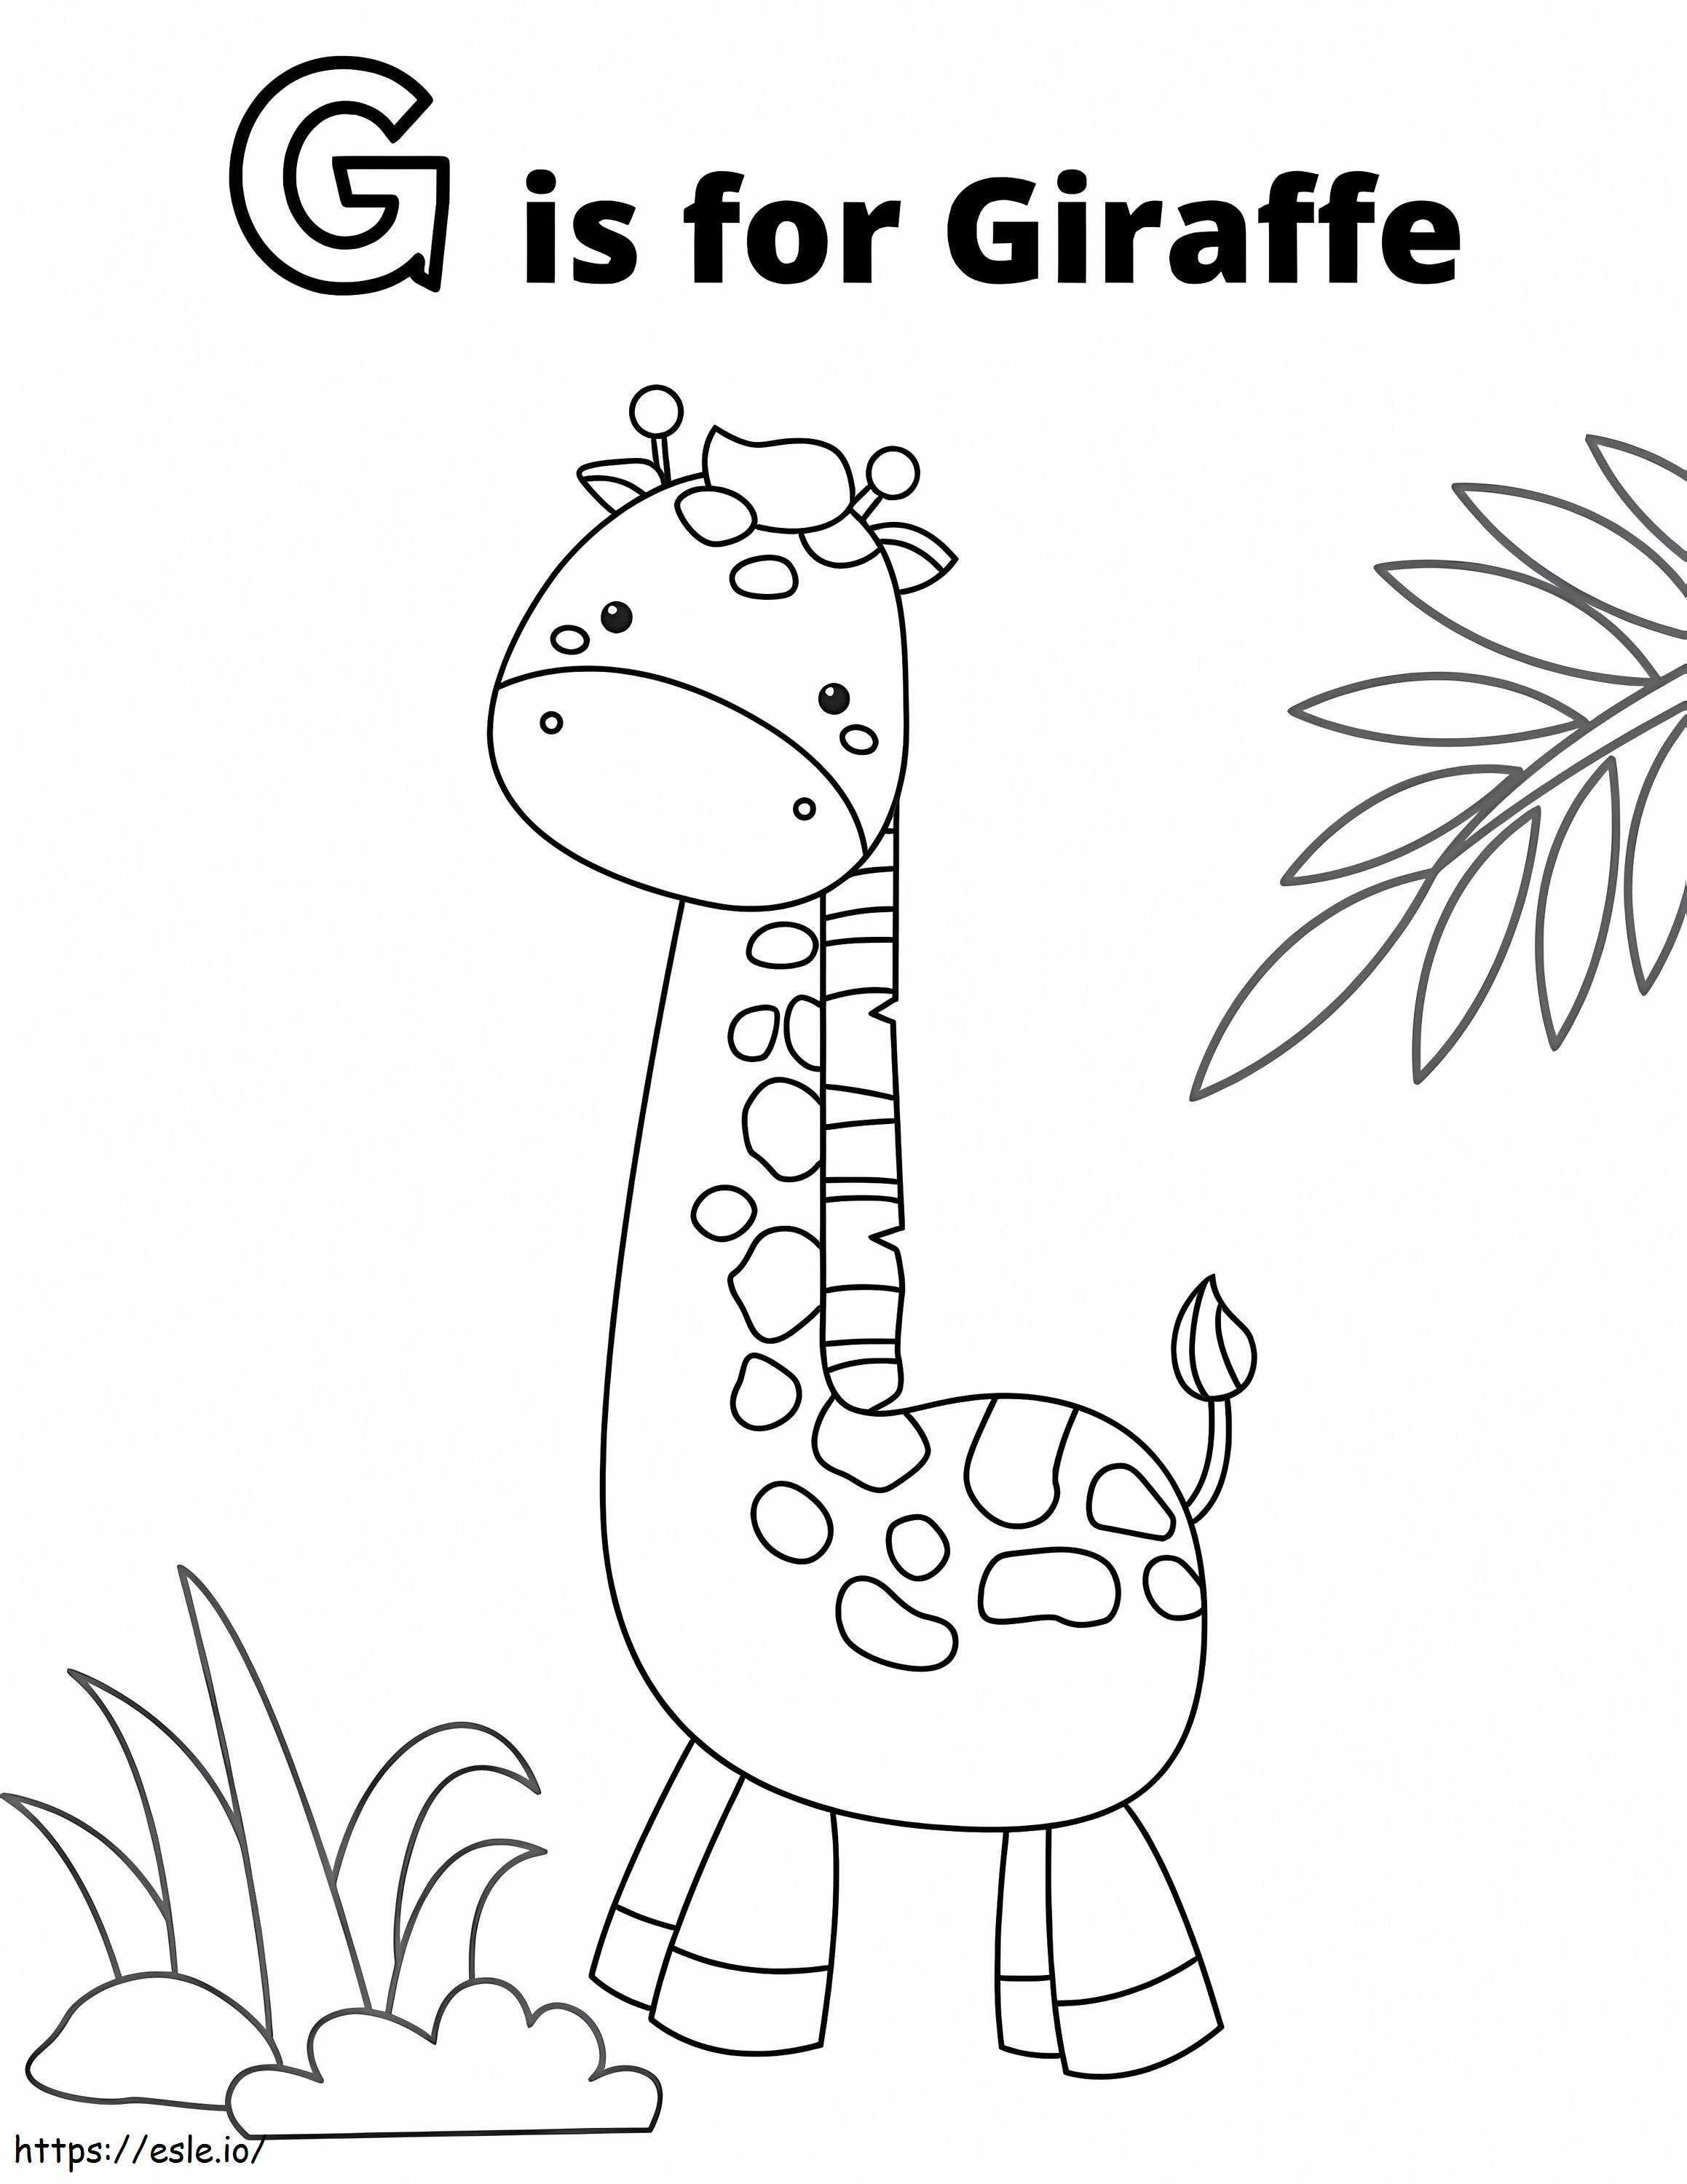 G sta per Giraffa da colorare